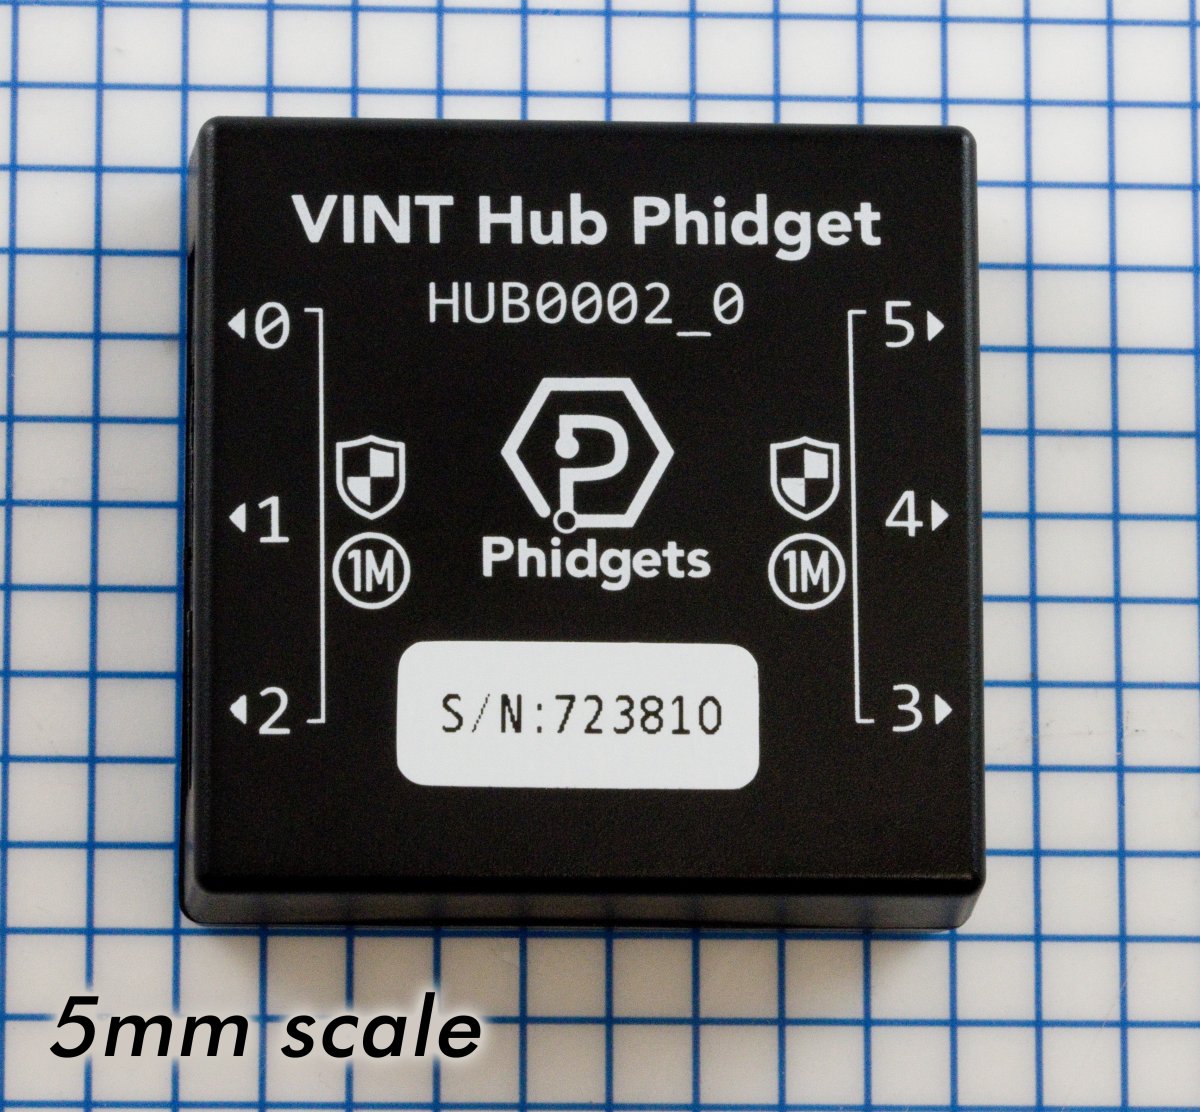 VINT Hub Phidget